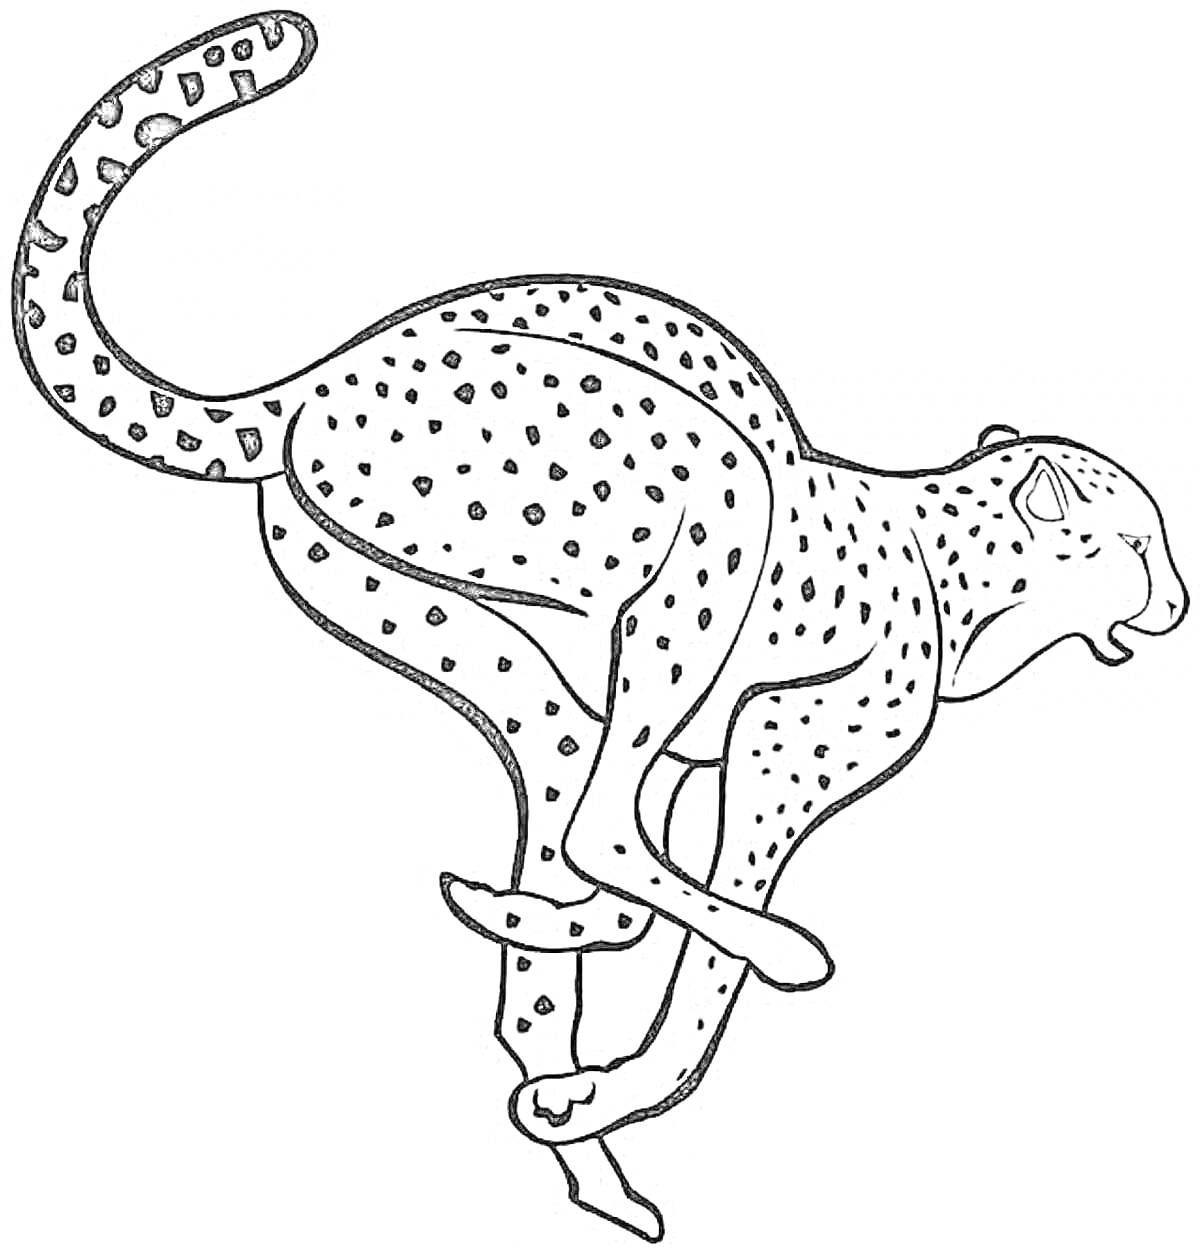 Раскраска Гепард в беге с пятнами и длинным хвостом